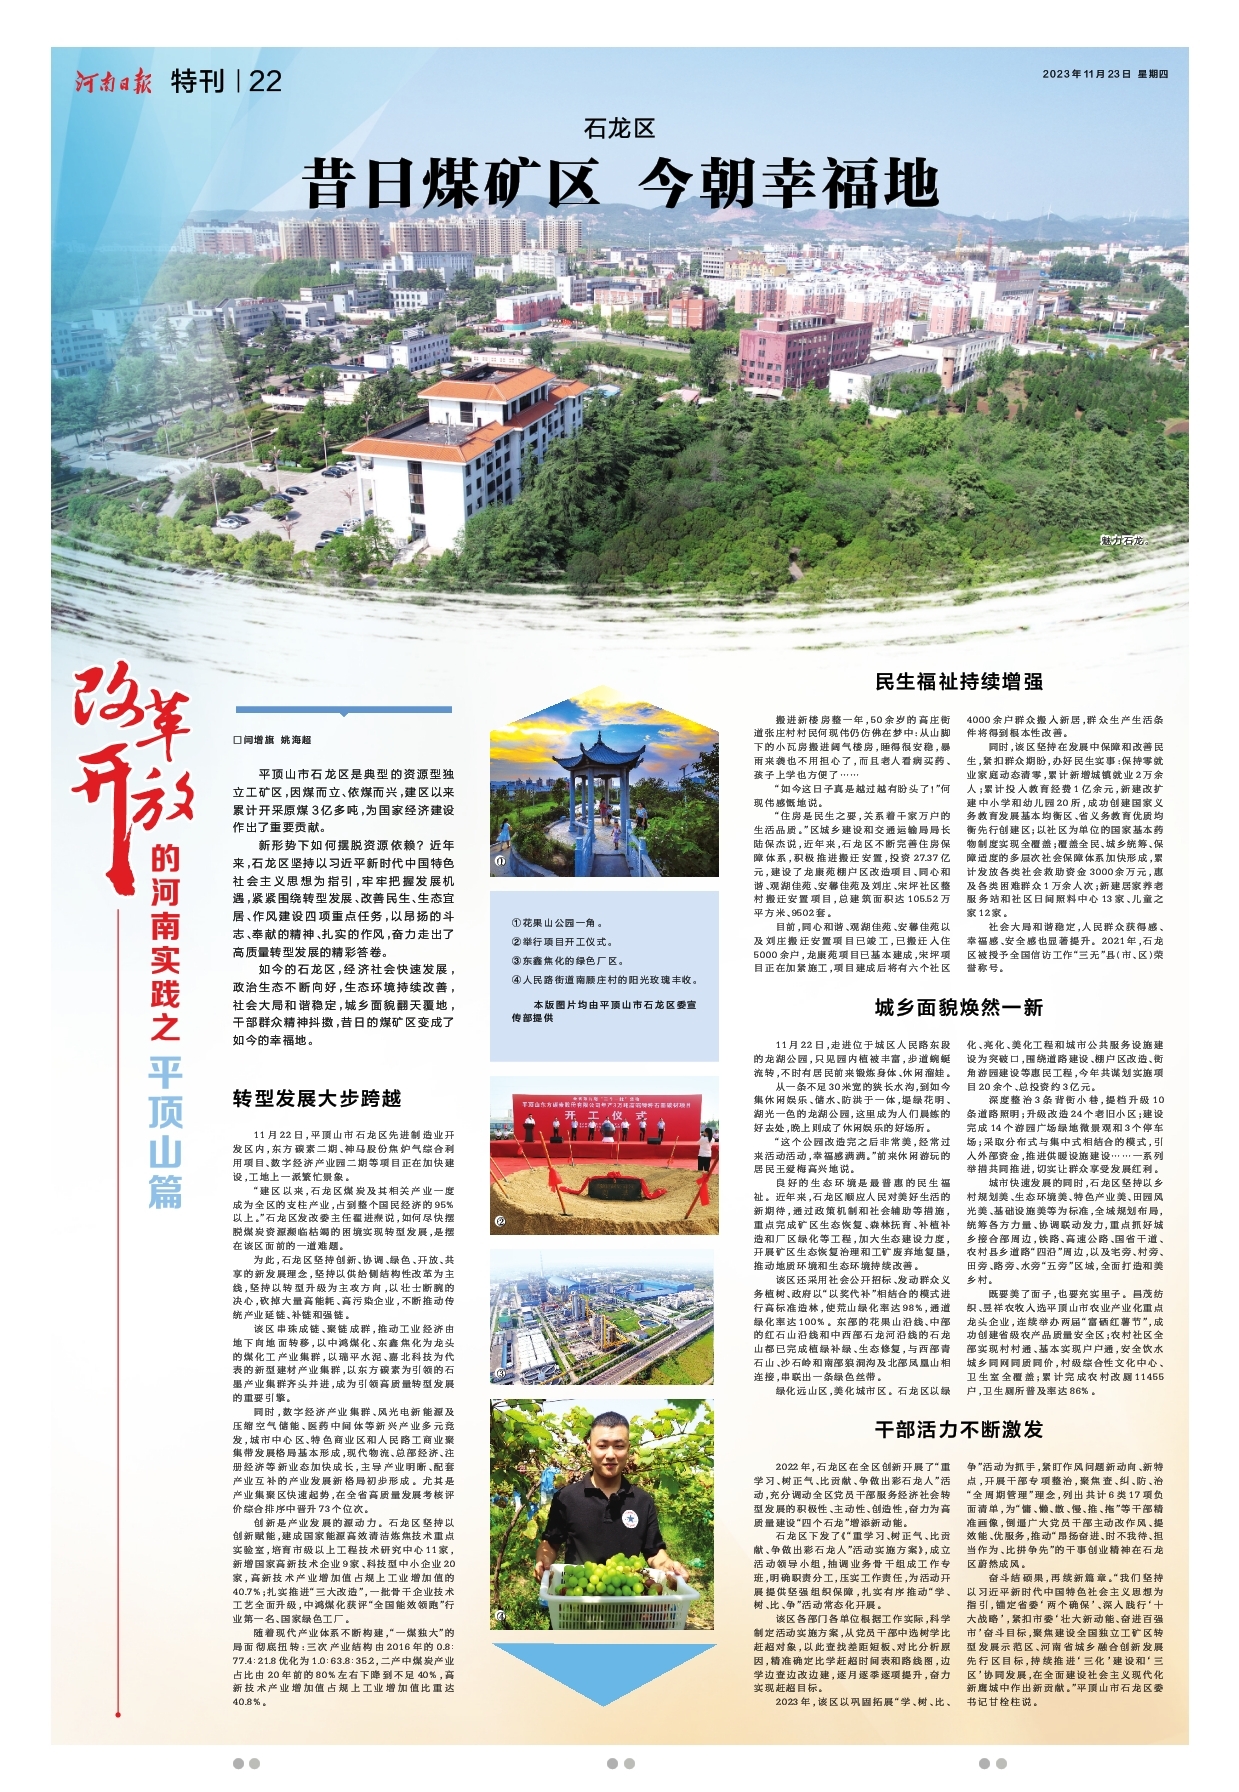 《河南日报》今日推出“改革开放的河南实践”平顶山篇：转出新天地 “平”添新气象